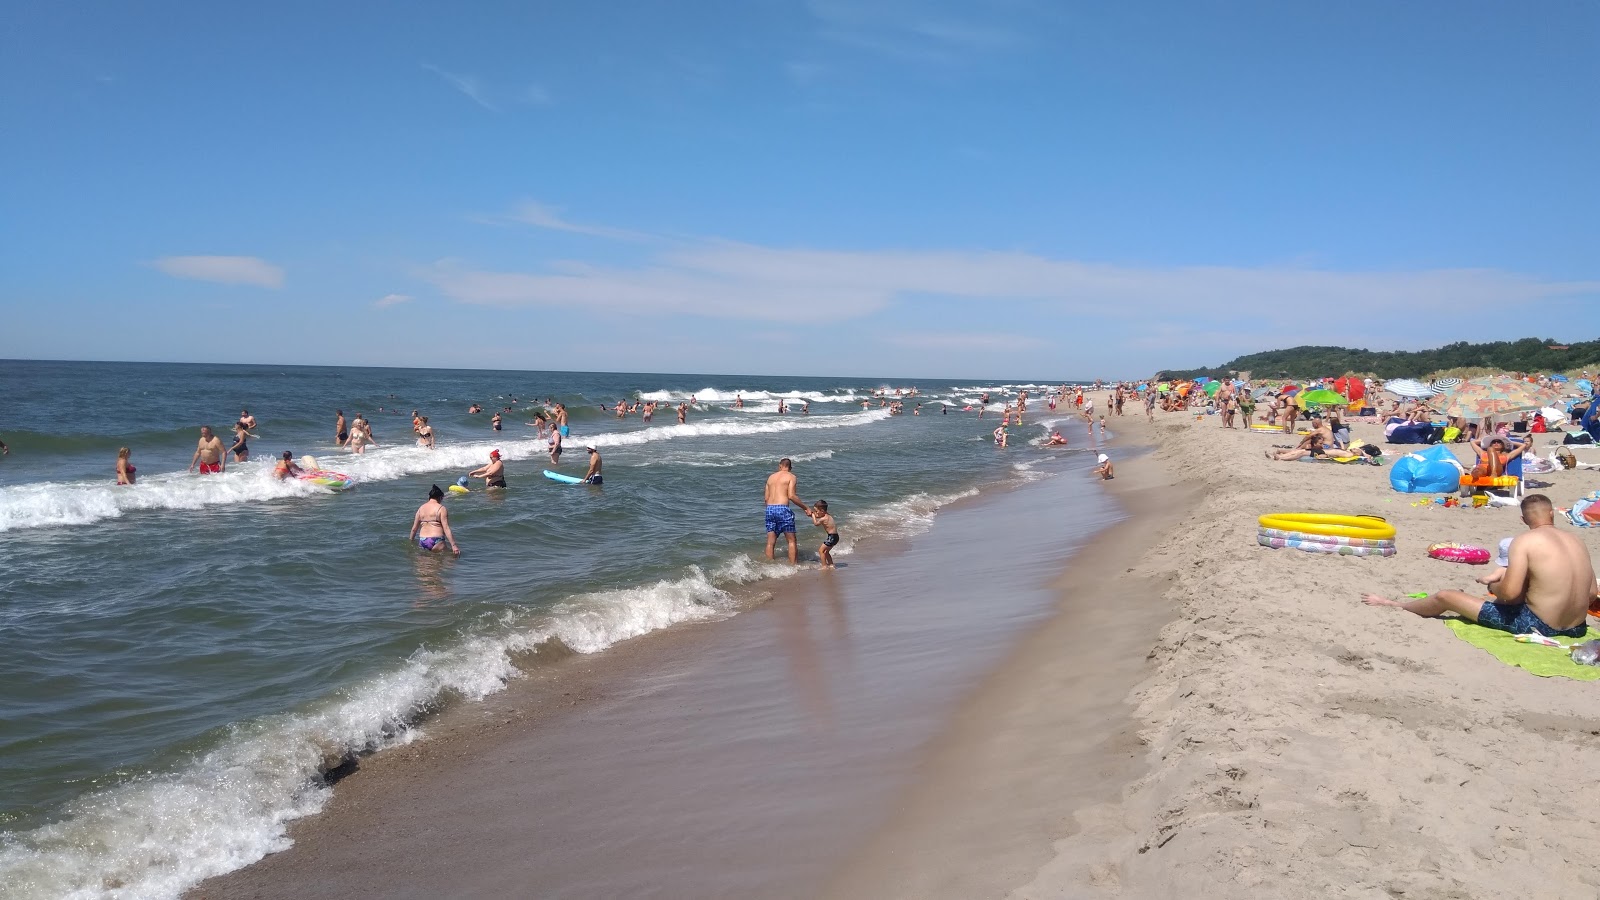 Yantarnyy Plaj II'in fotoğrafı imkanlar alanı